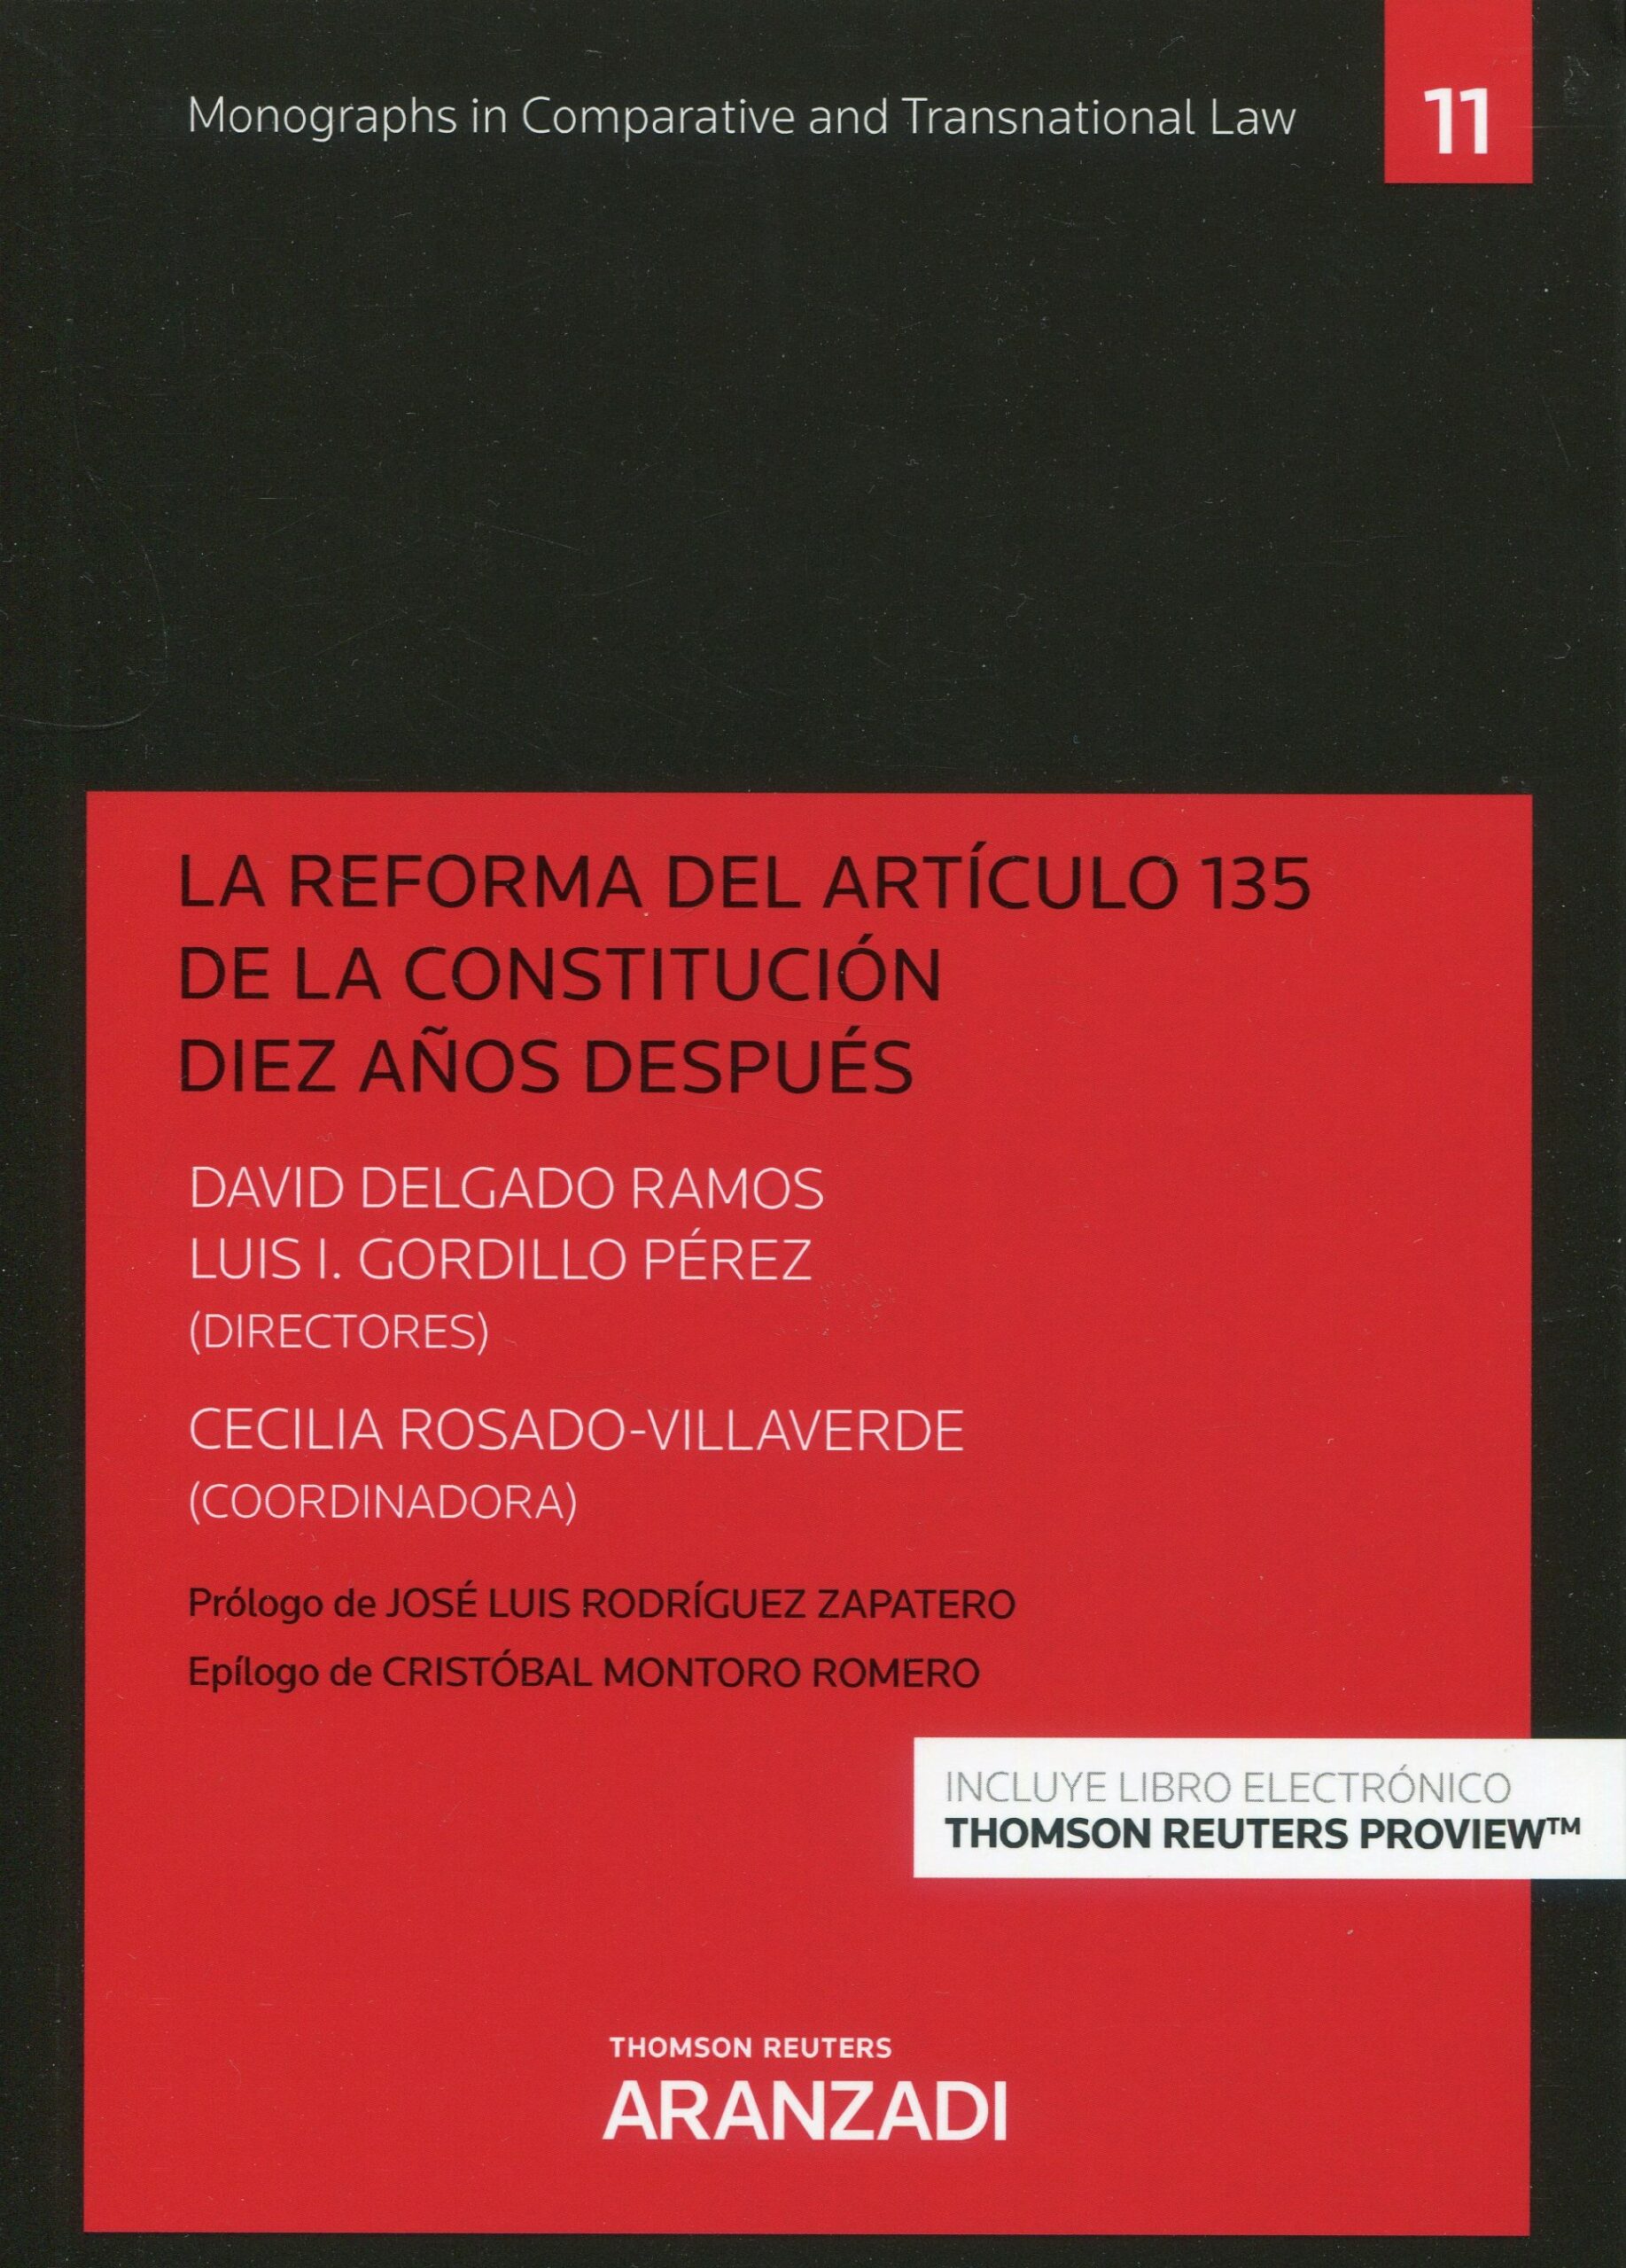 La reforma del Artículo 135 de la Constitución diez años después